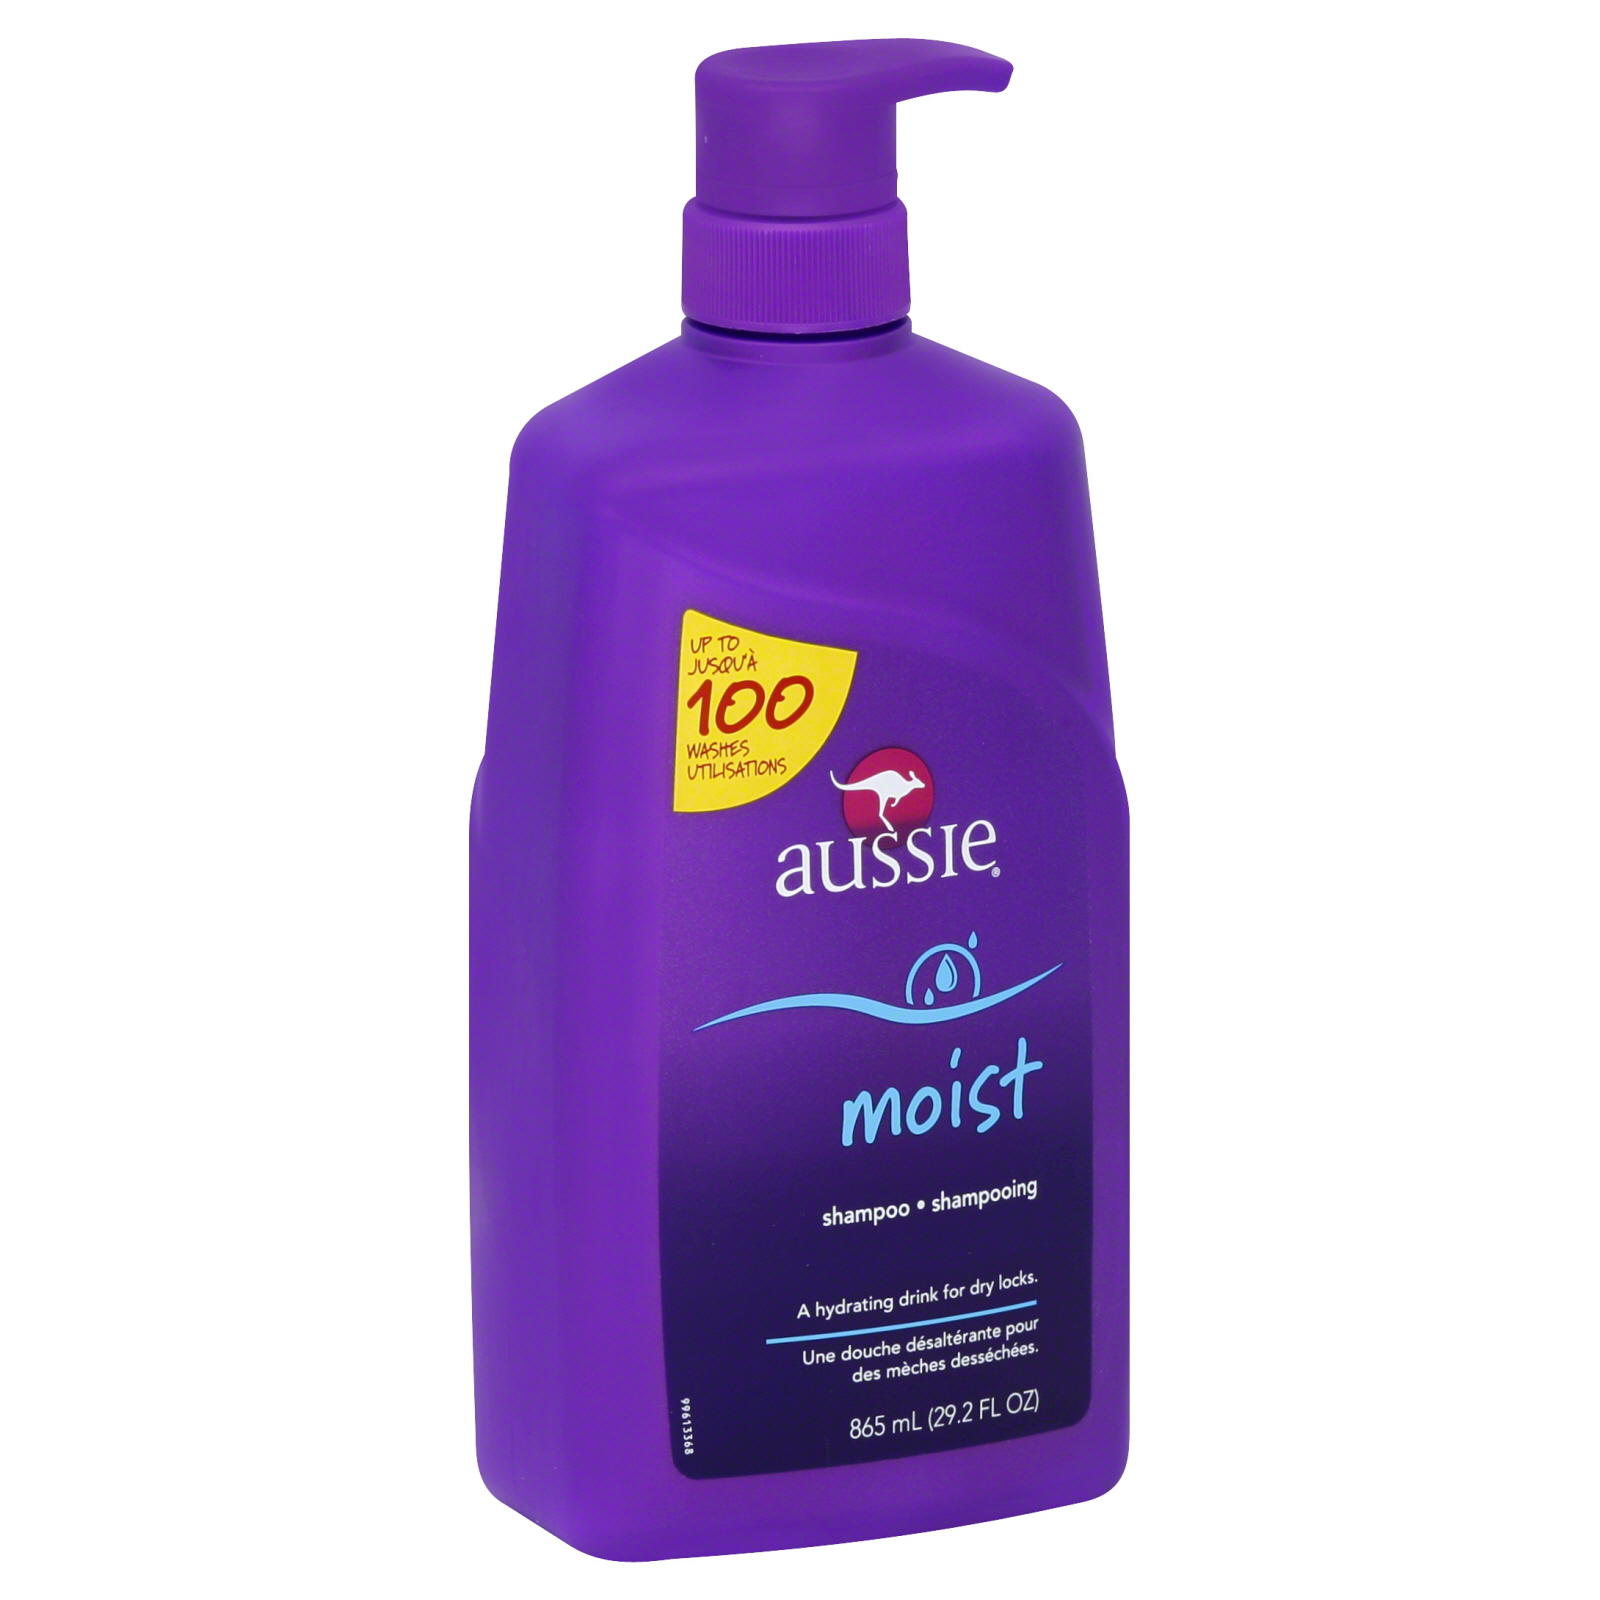 Aussie Moist Shampoo, 29.2 oz